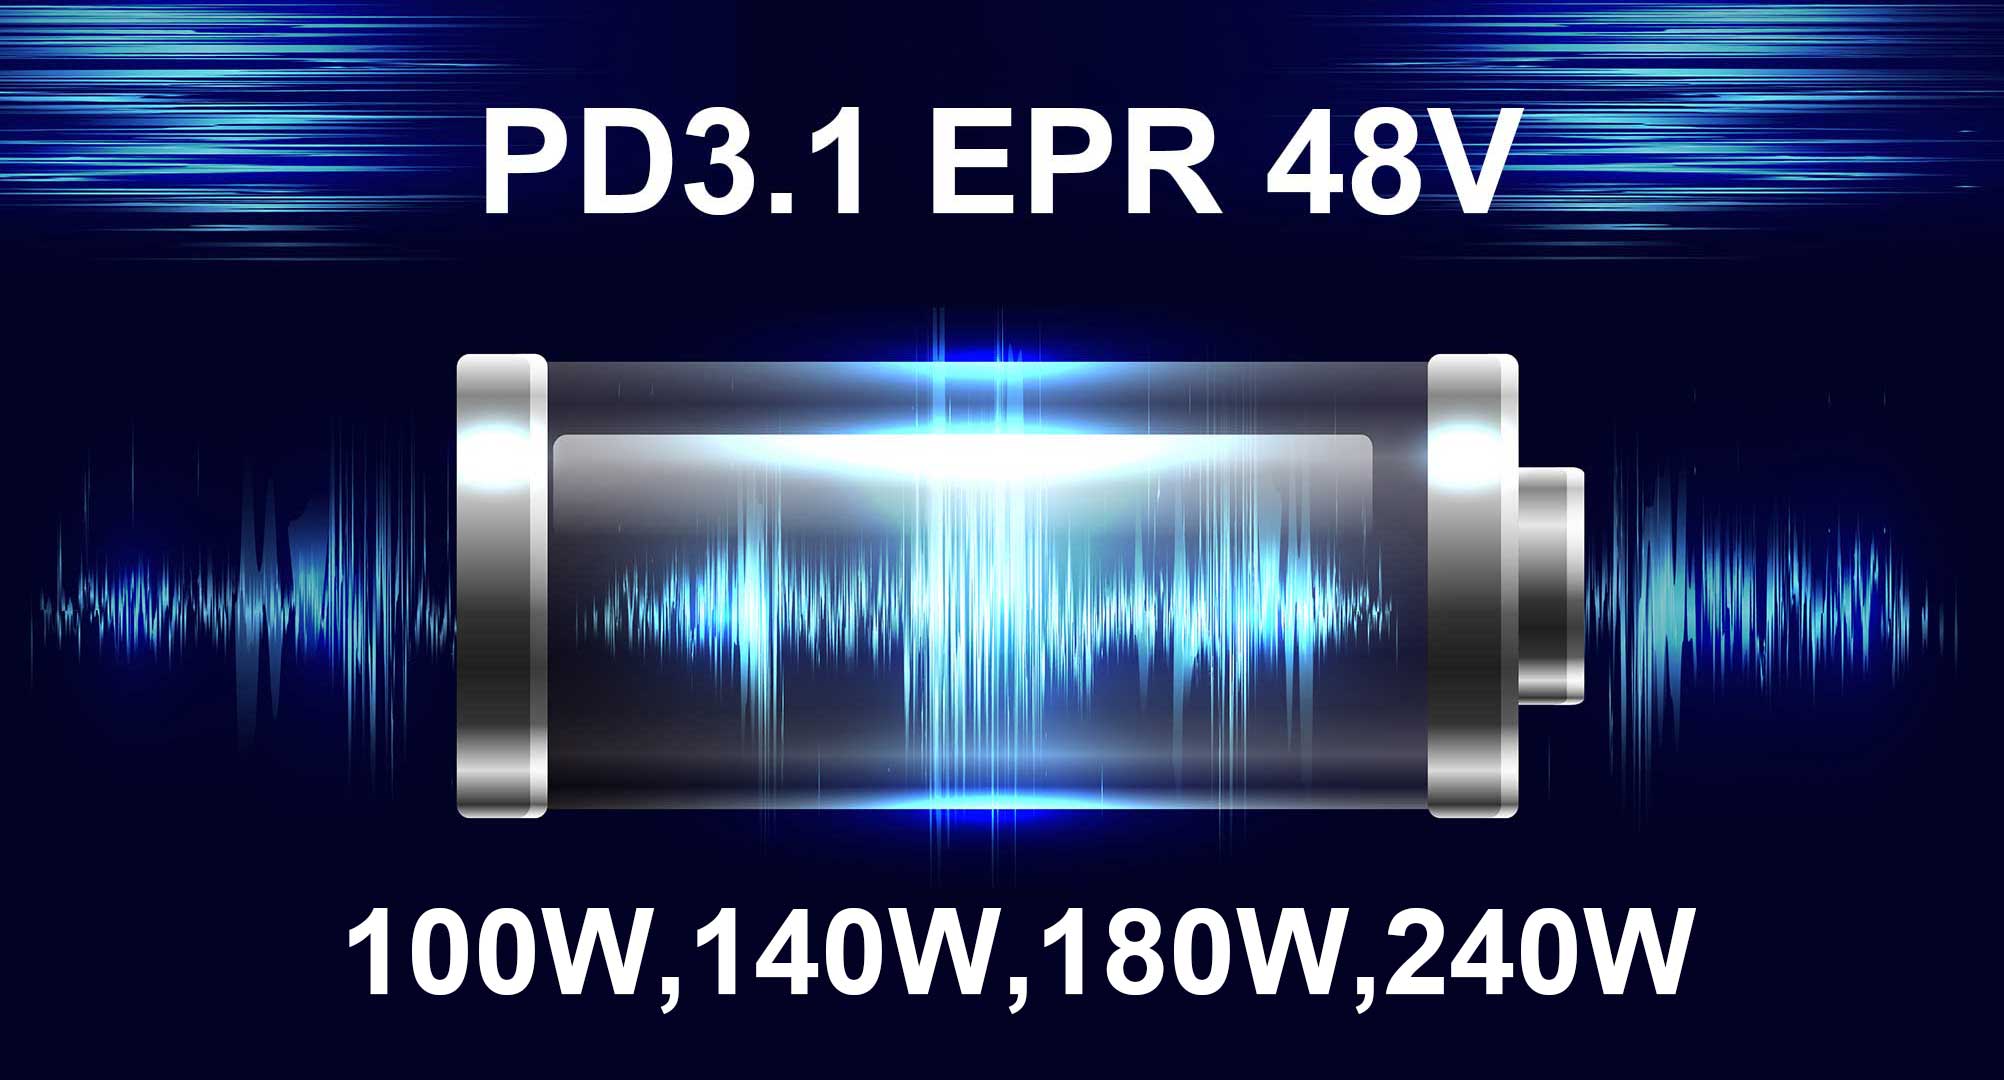 LVSUN bringt die neue Produktserie PD3.1 EPR 48V auf den Markt und führt die Ladebranche in eine neue Ära